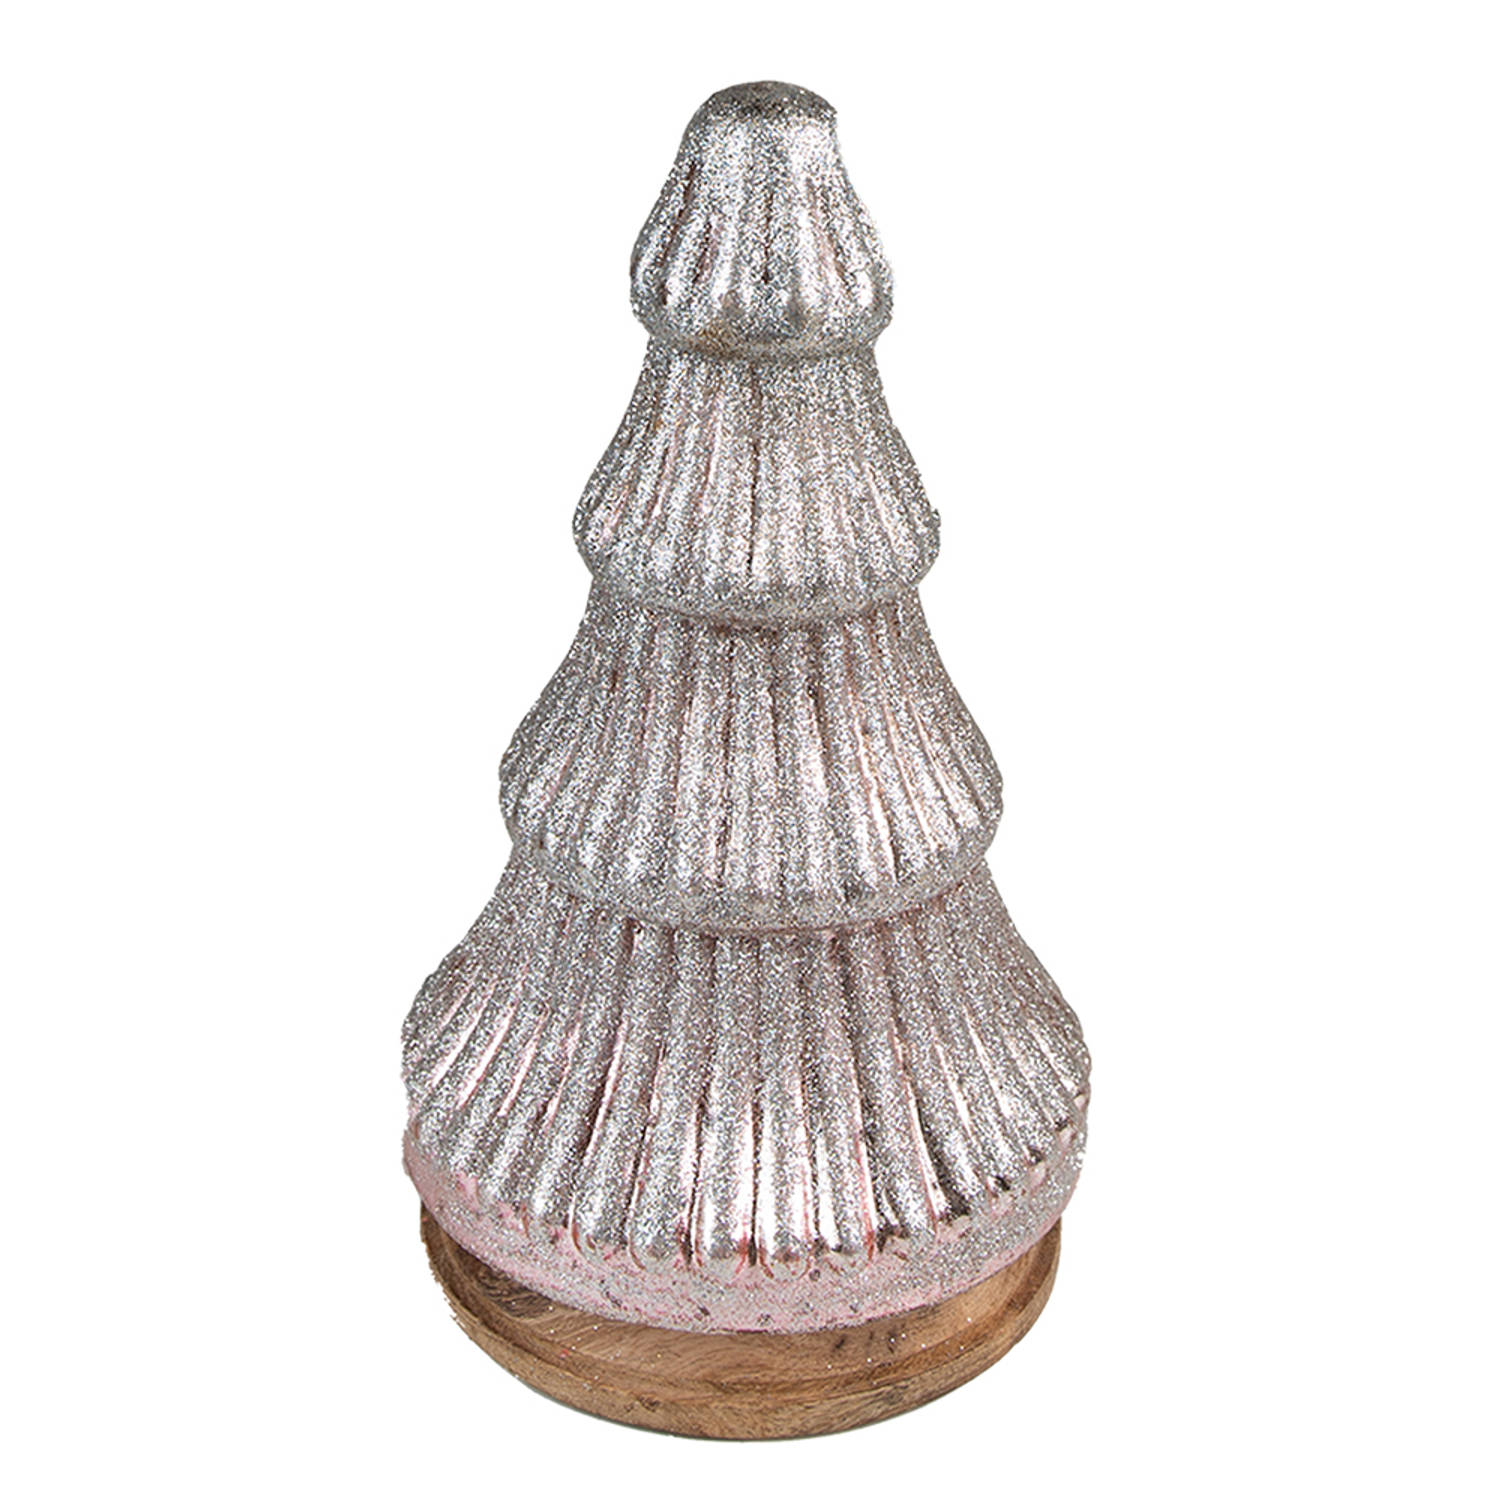 HAES DECO - Decoratieve Kerstboom - Formaat Ø 13x24 cm - Kleur Grijs - Materiaal Hout / Glas - Kerstversiering, Kerstdecoratie